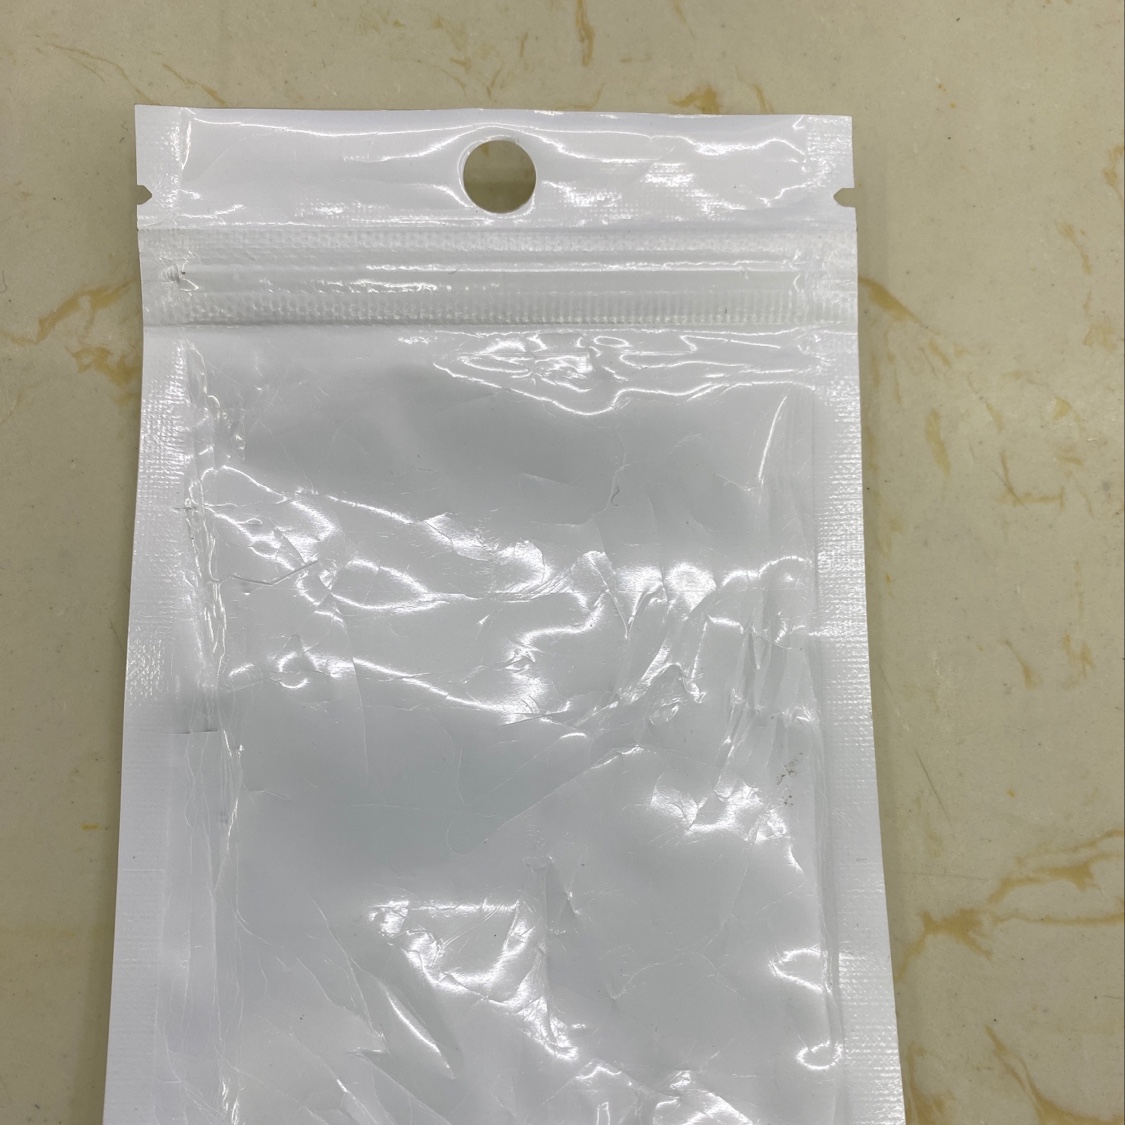 塑料膜其他塑料包装材料11*16珠光拉链阴阳包装袋详情图1